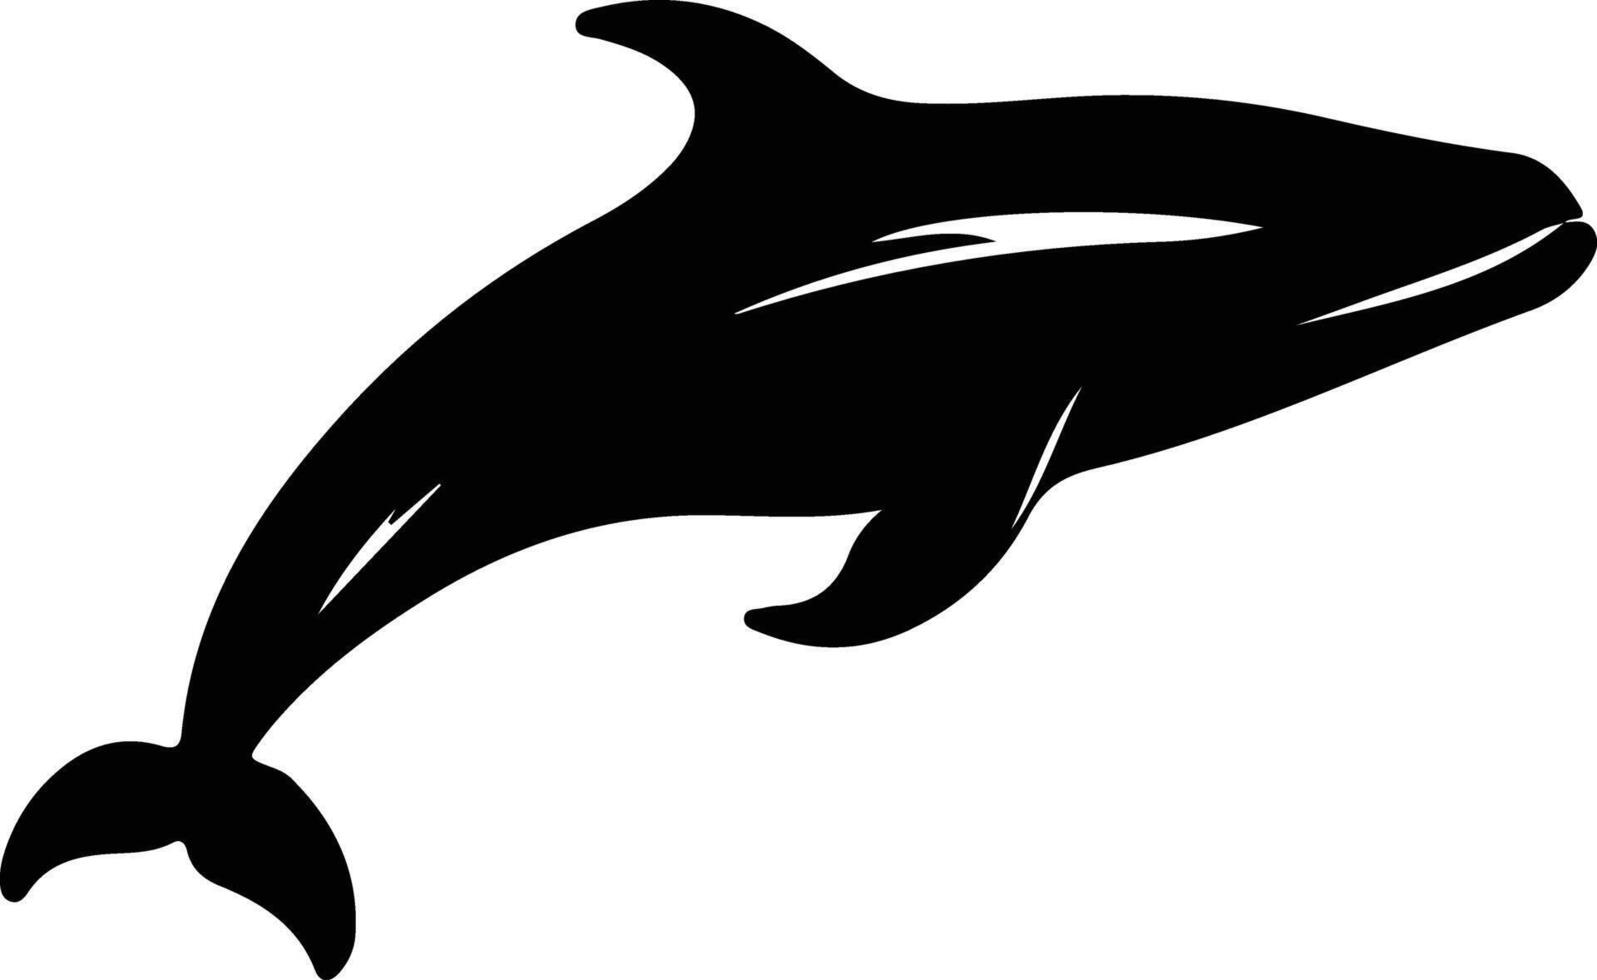 nord droite baleine noir silhouette vecteur